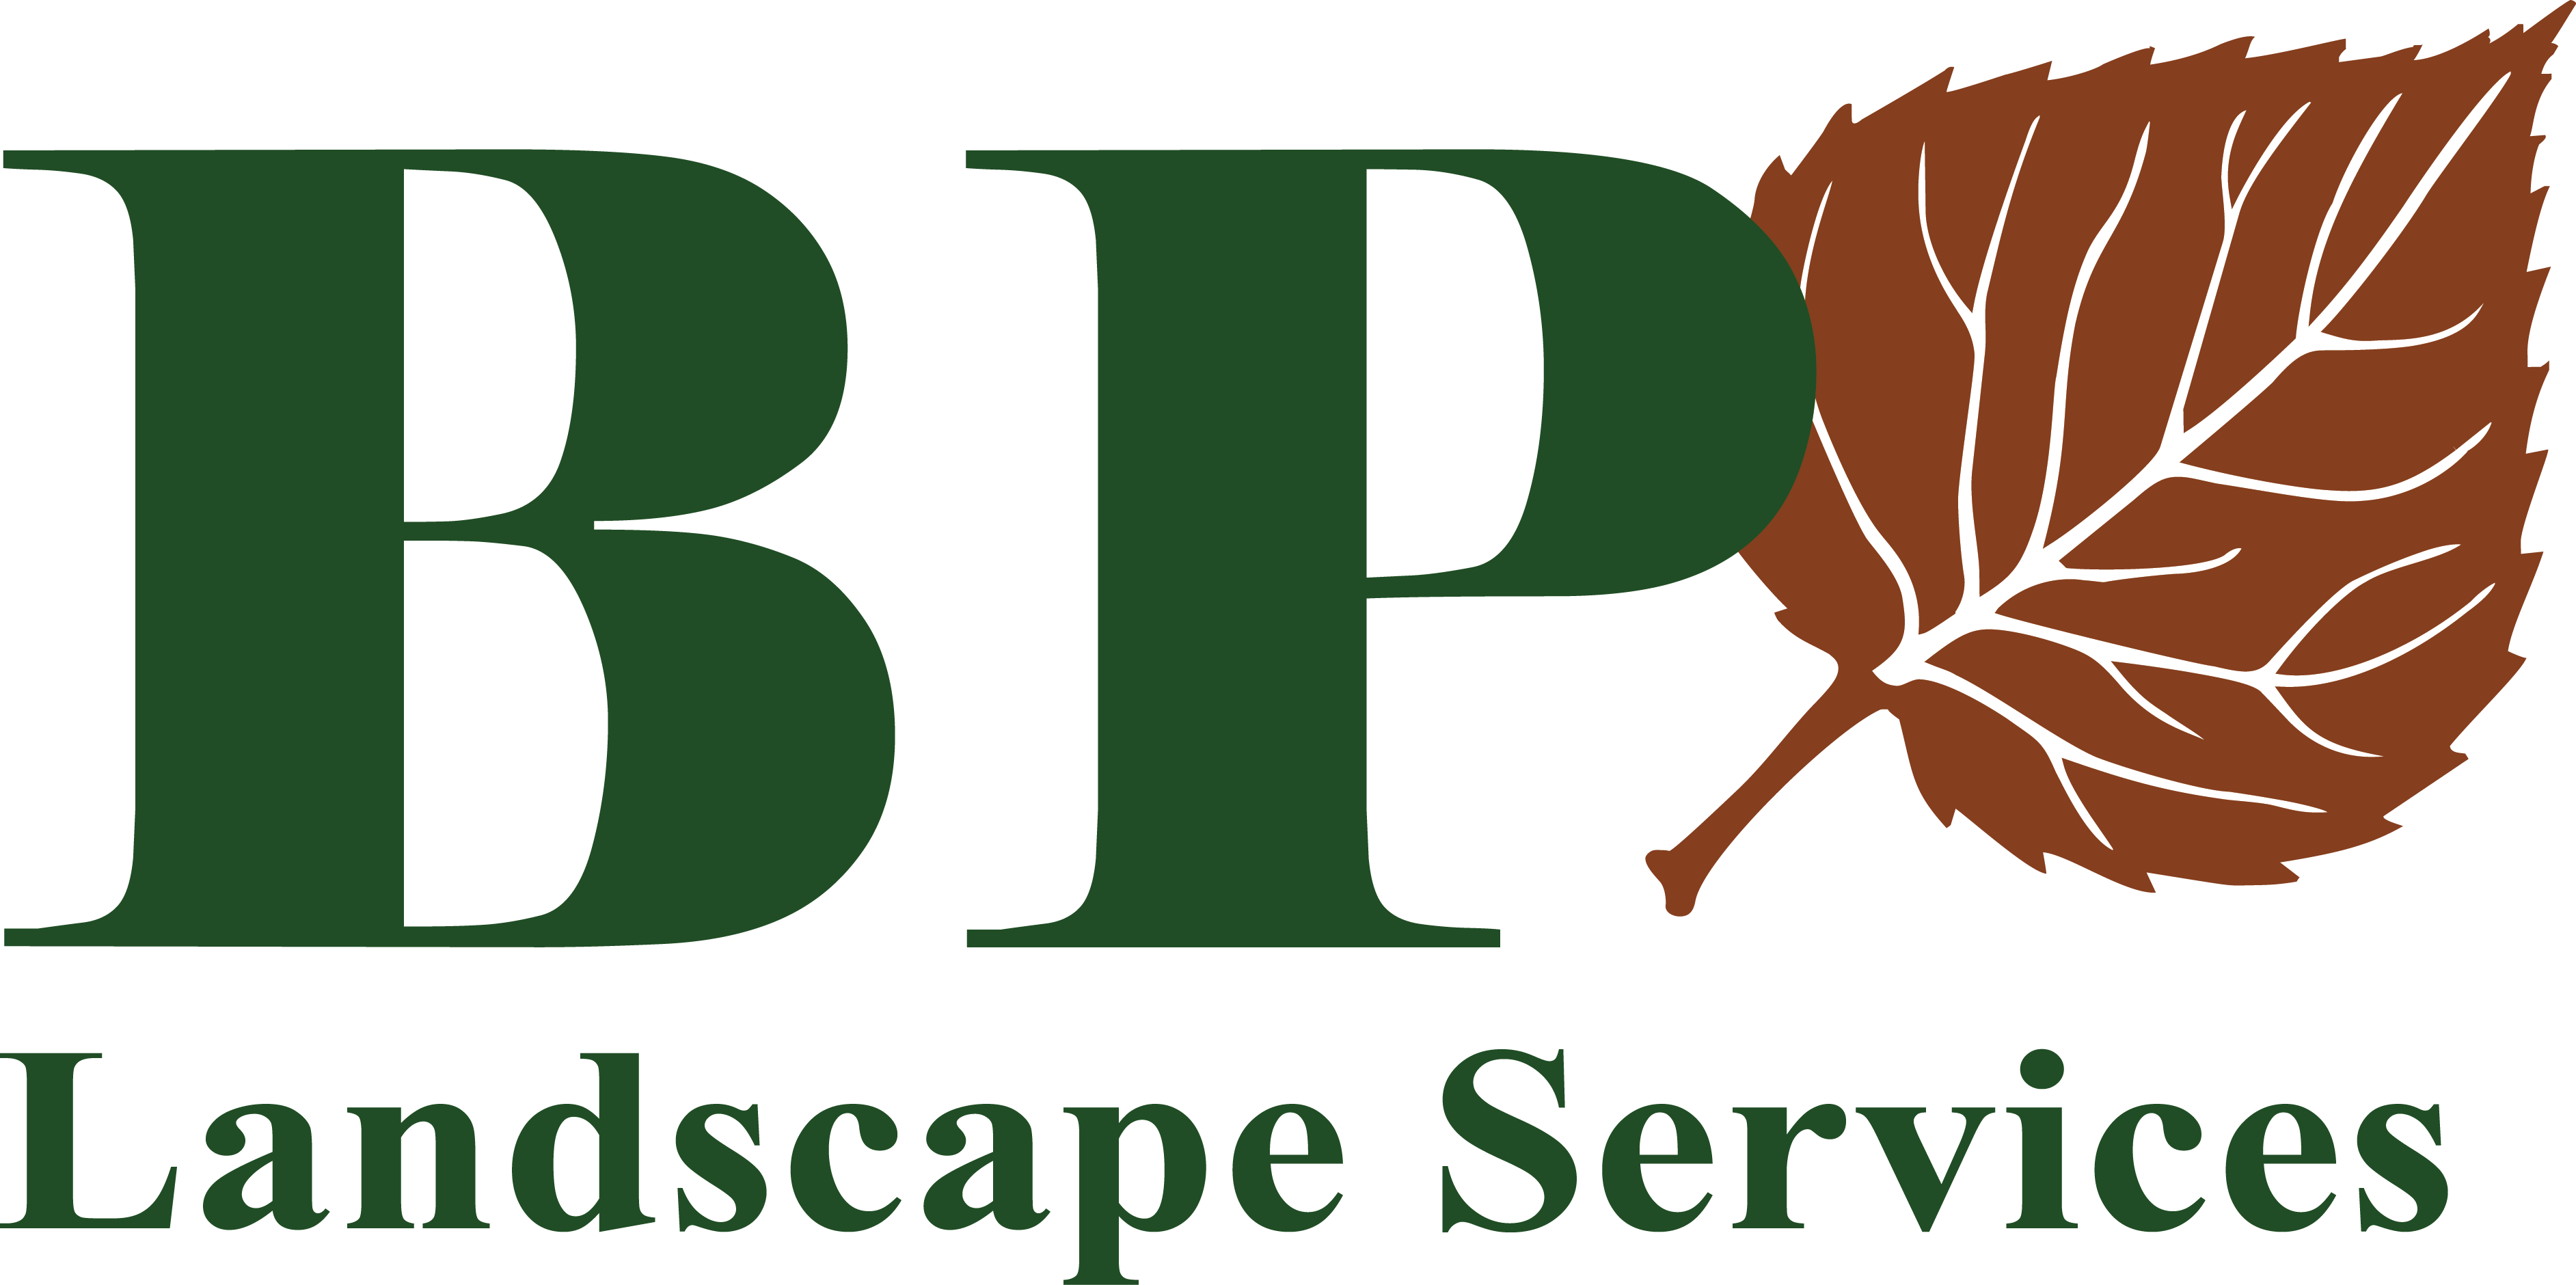 PCM Logo - vector logo - BP Landscape Services - PCM